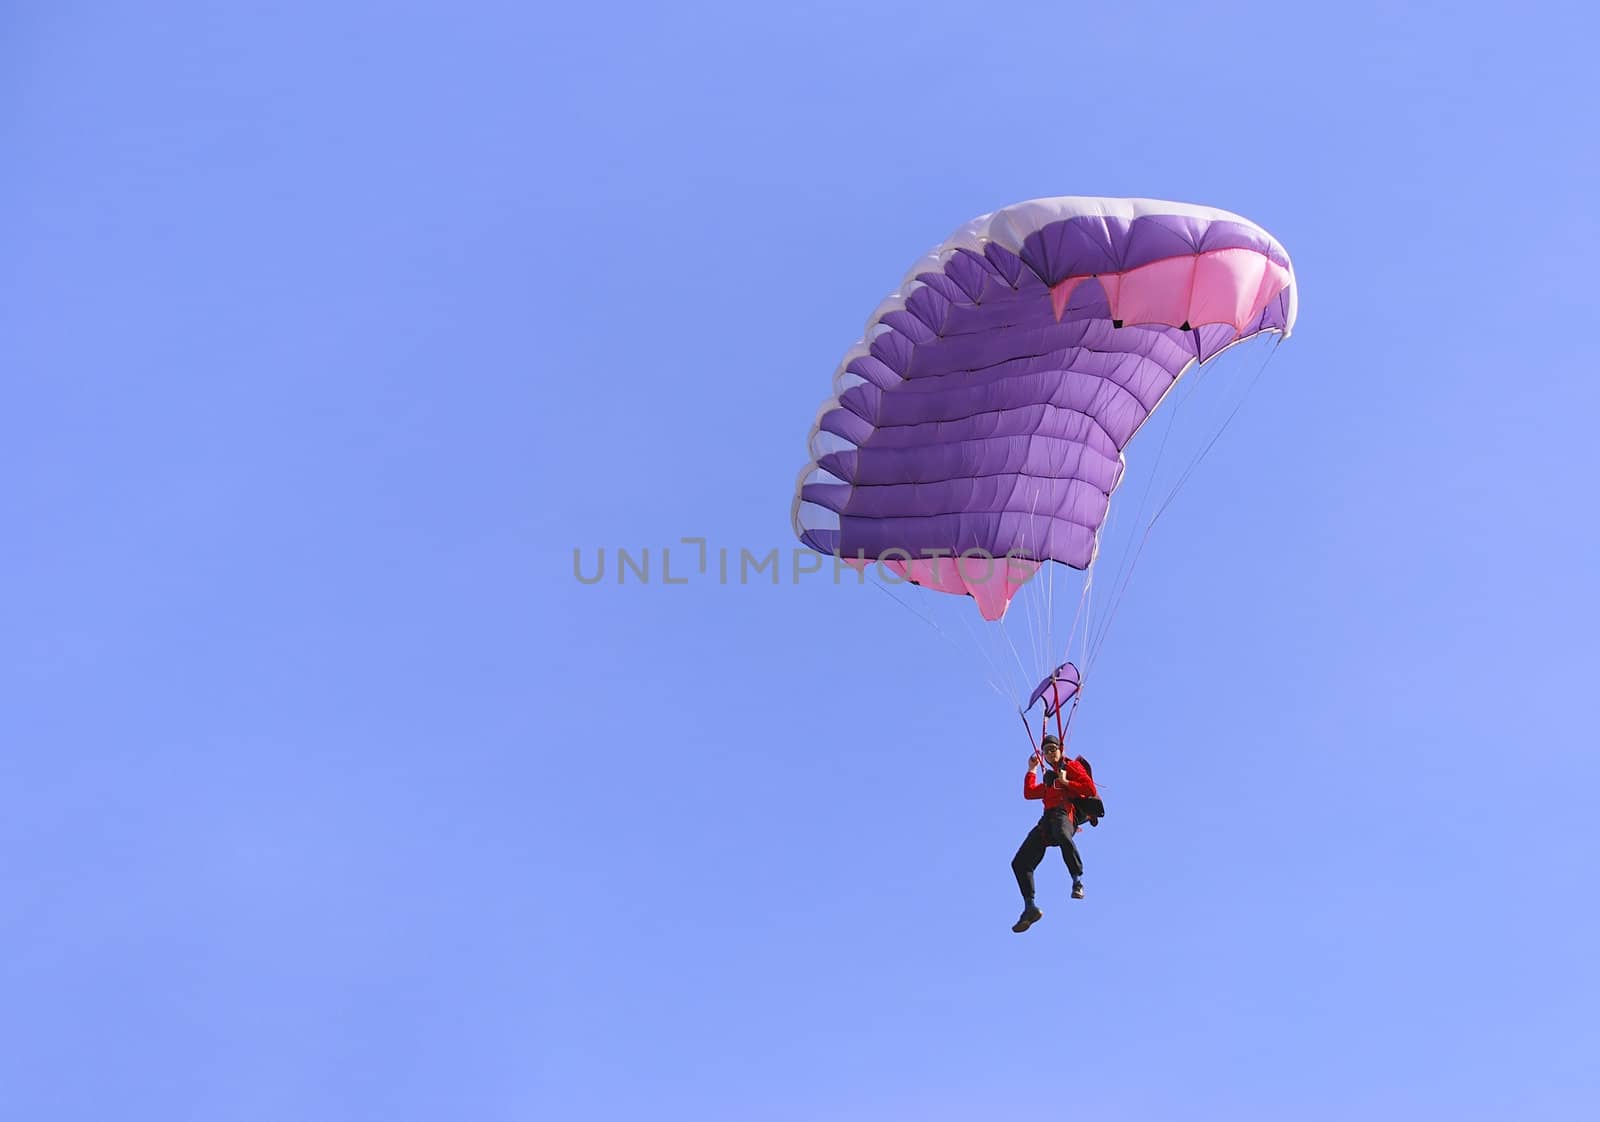 Purple parachute by whitechild